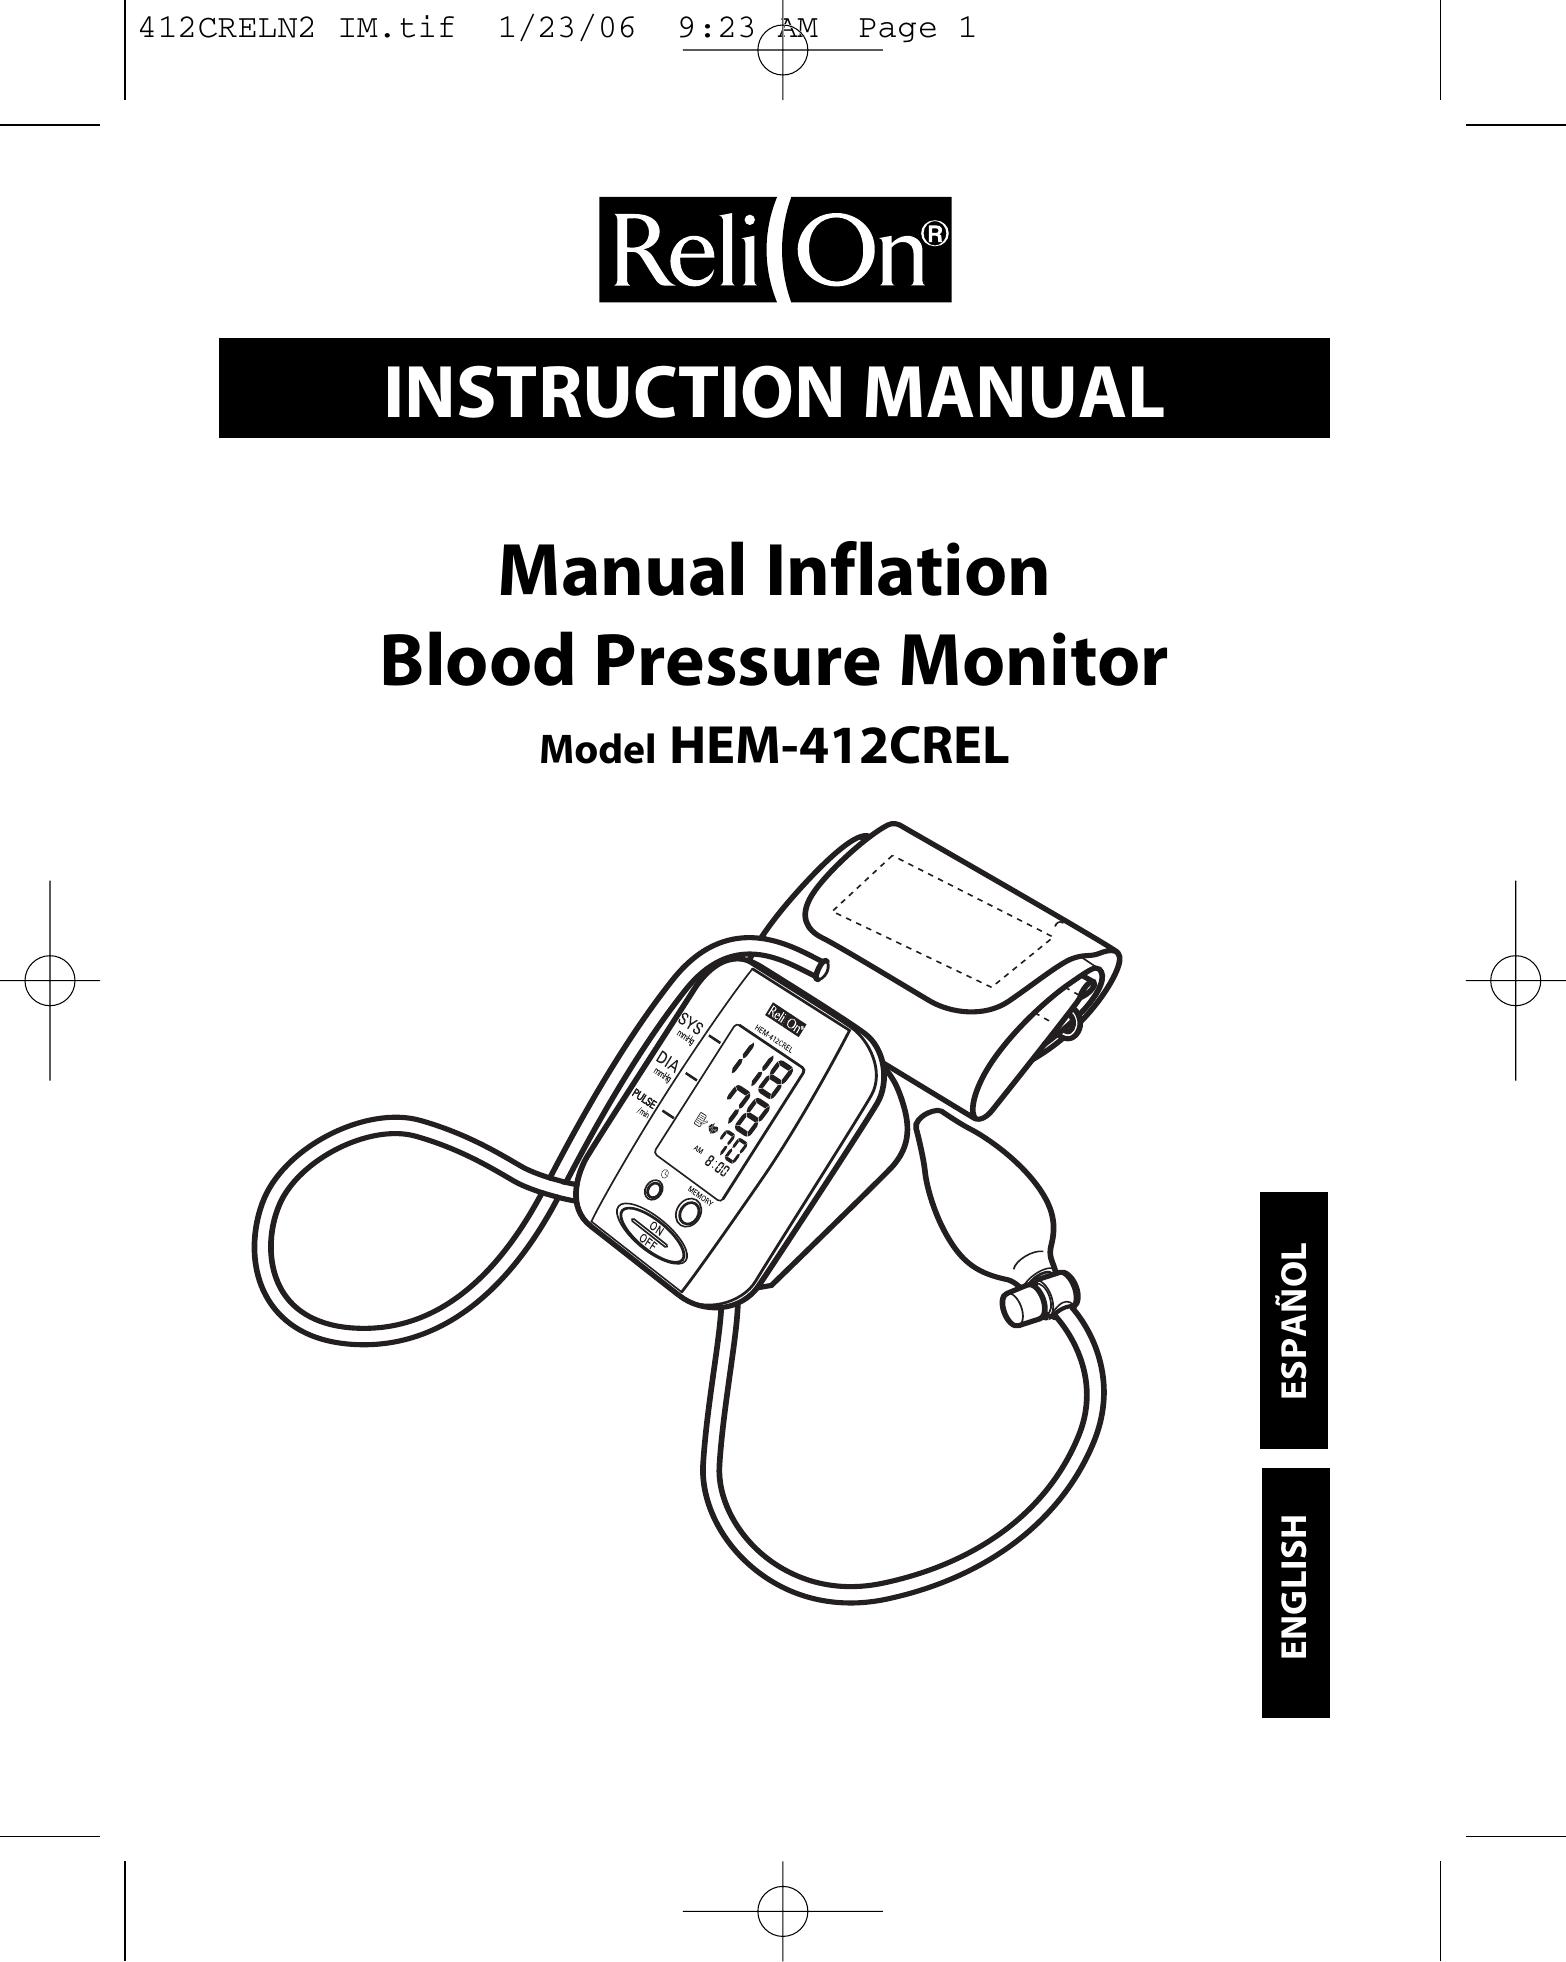 ReliOn HEM-412CREL Blood Pressure Monitor User Manual